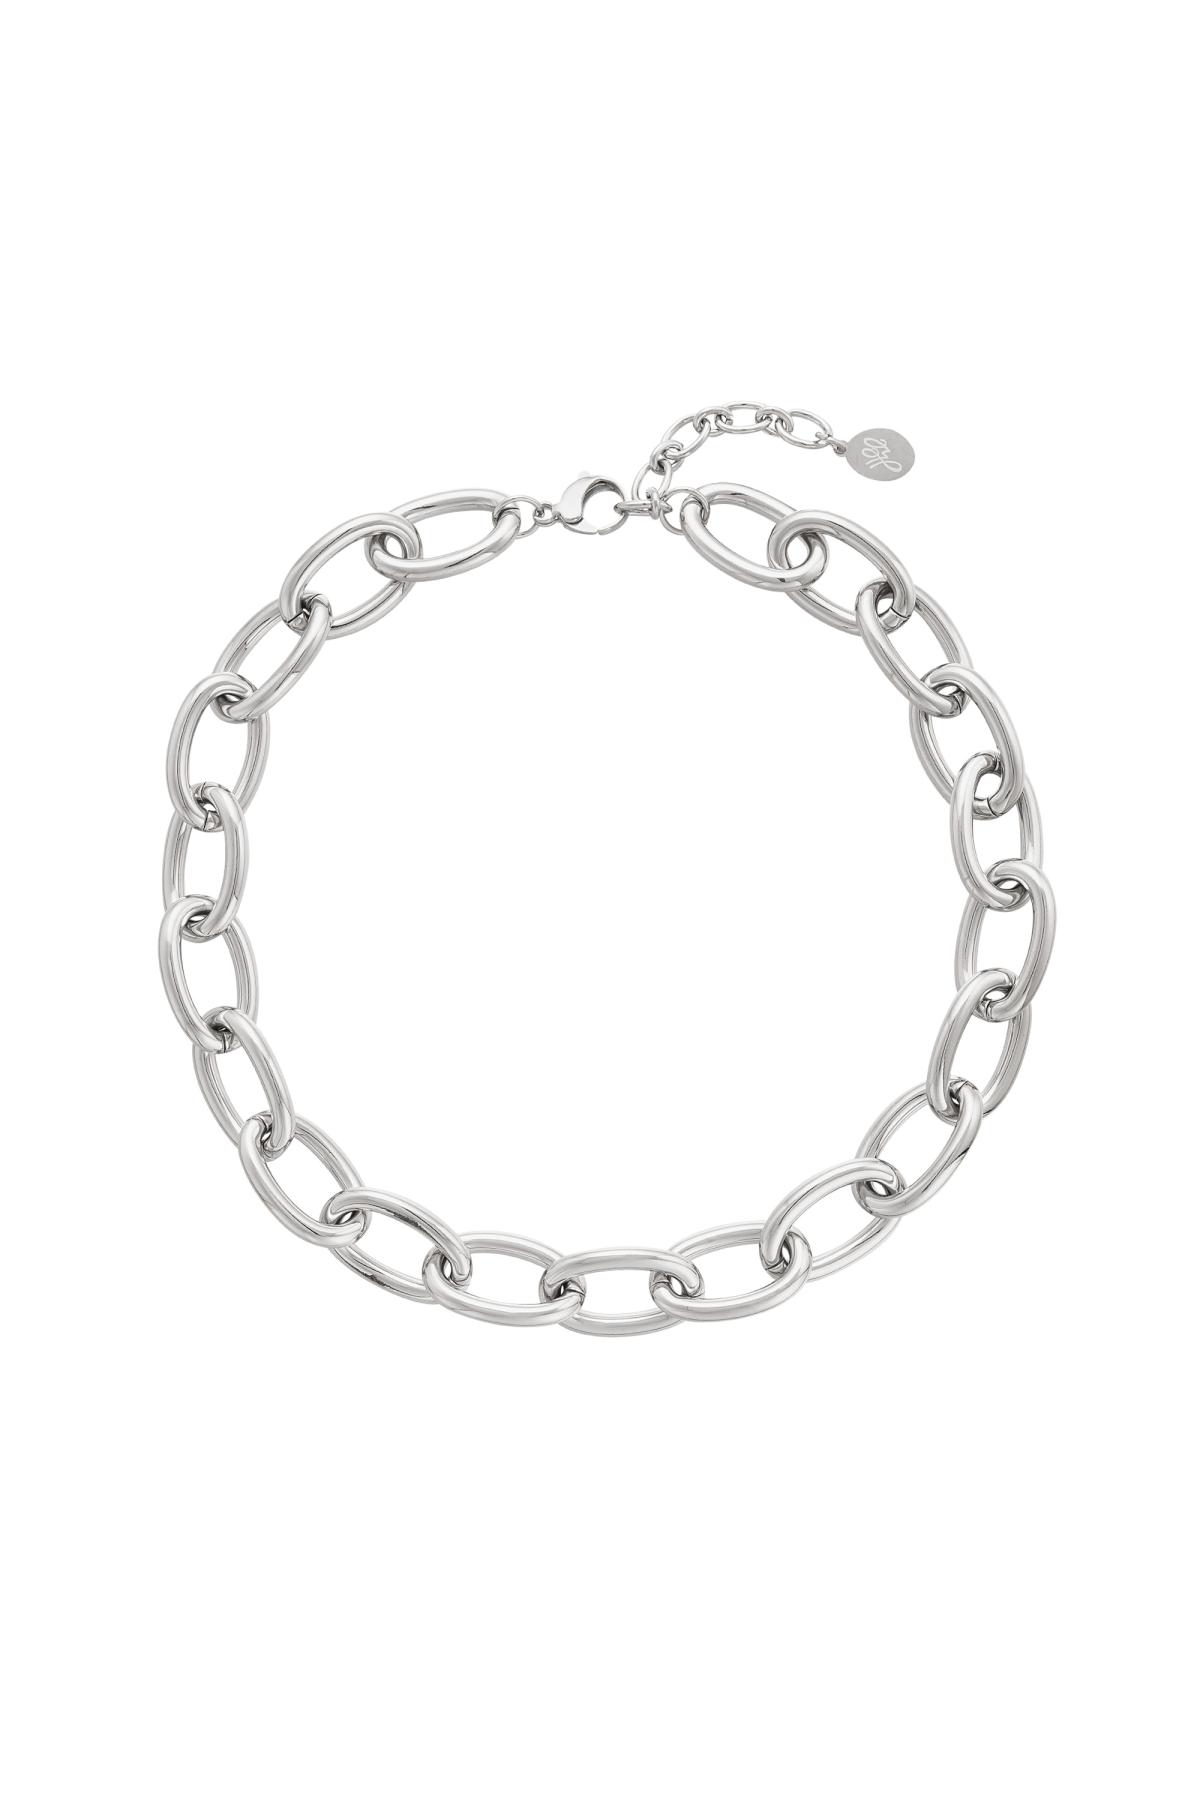 Klobige Halskette mit großen Gliedern Silber Edelstahl